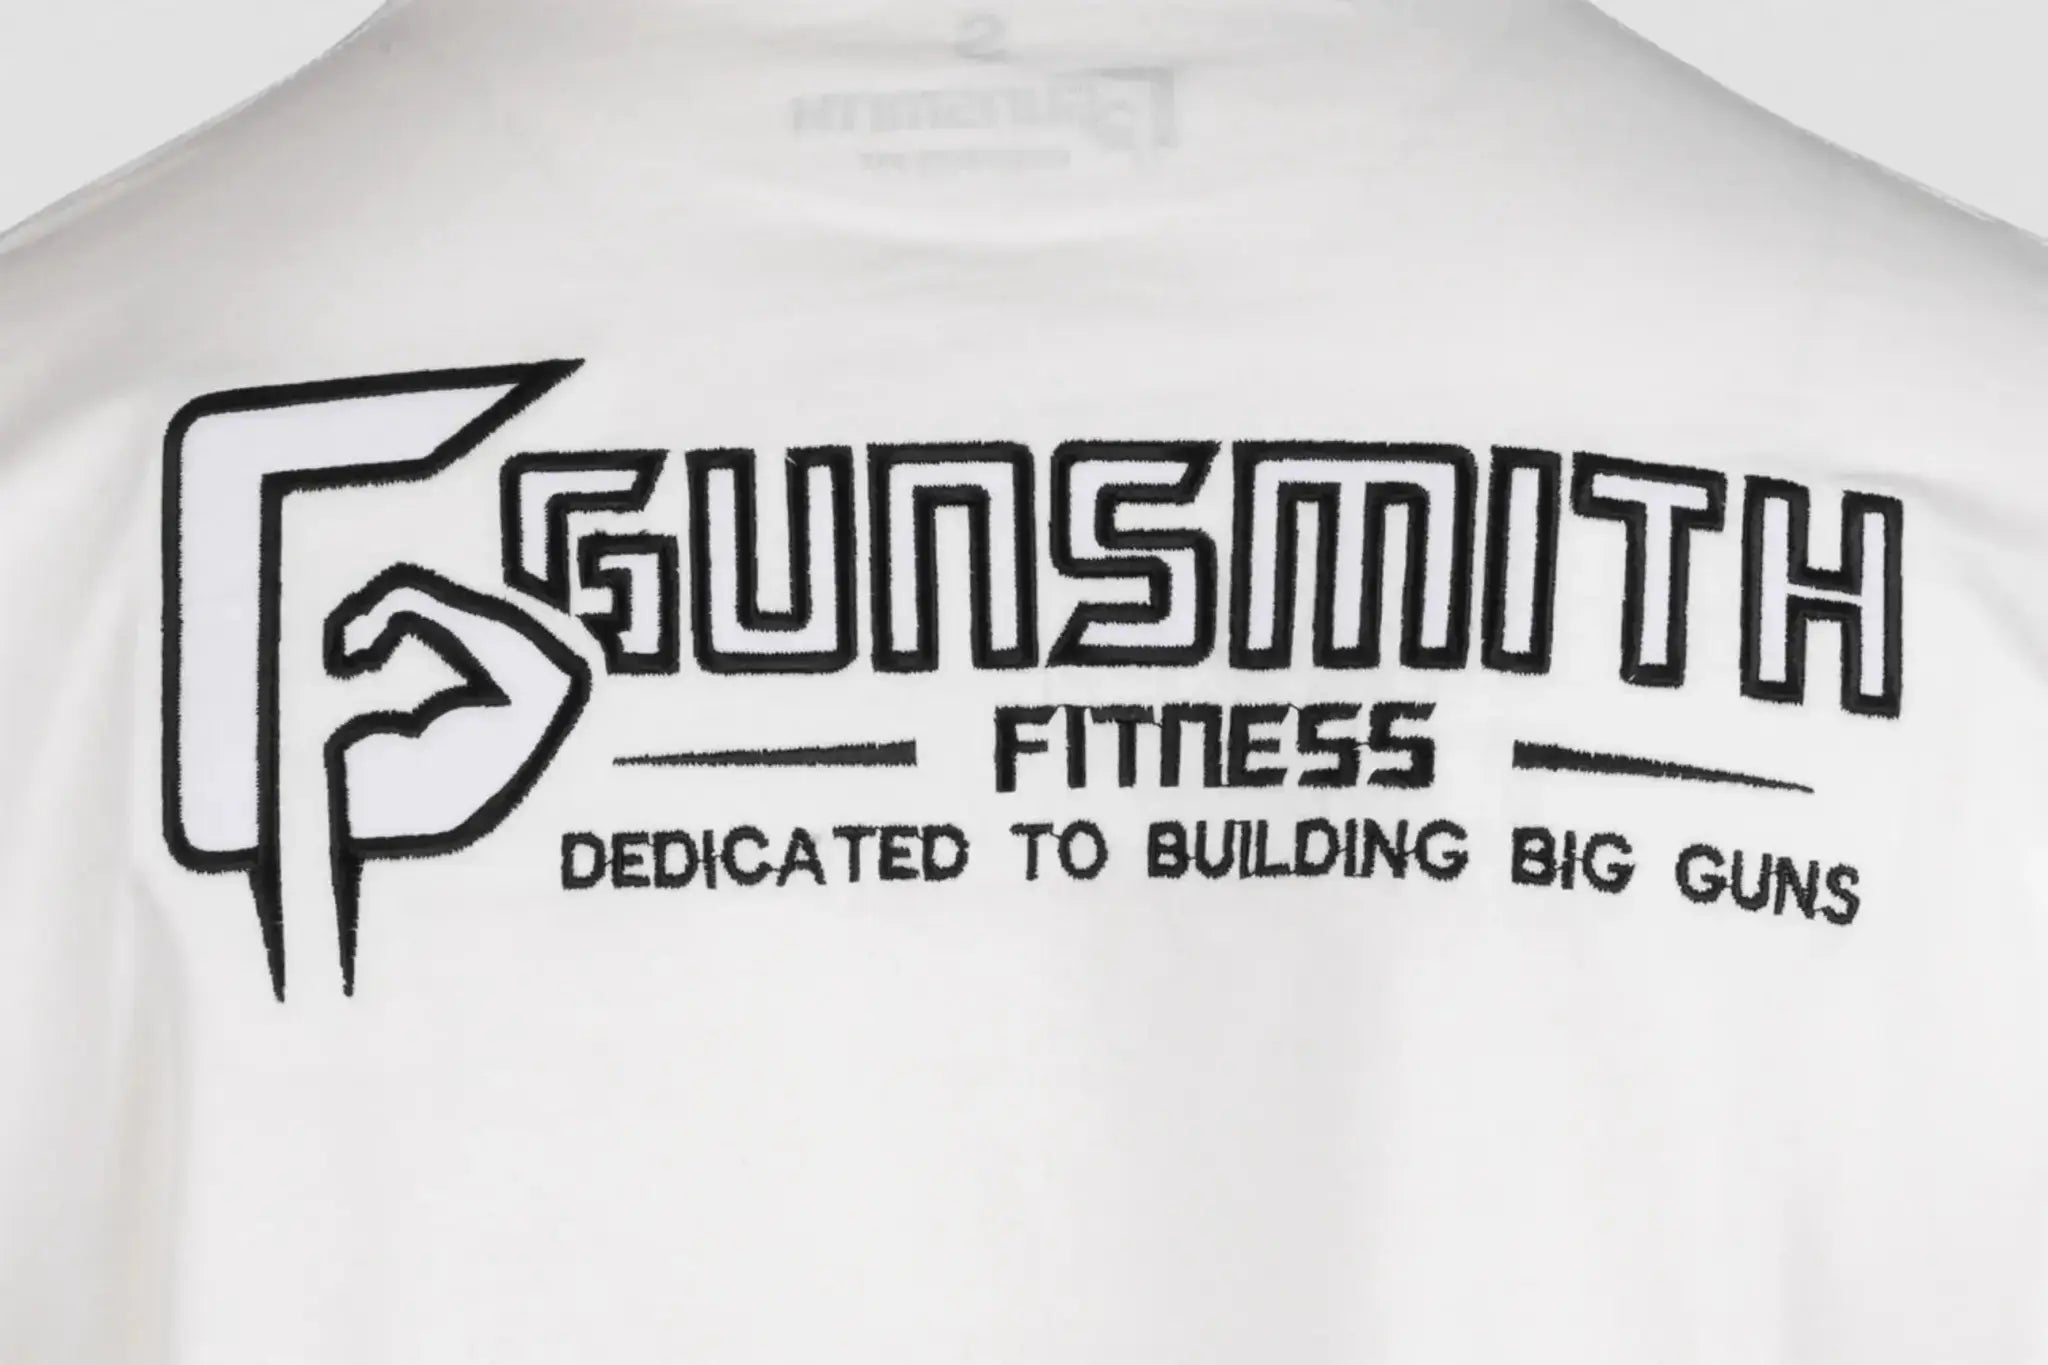 Gunsmith Apex Oversized G T-Shirt - Gunsmith Fitness